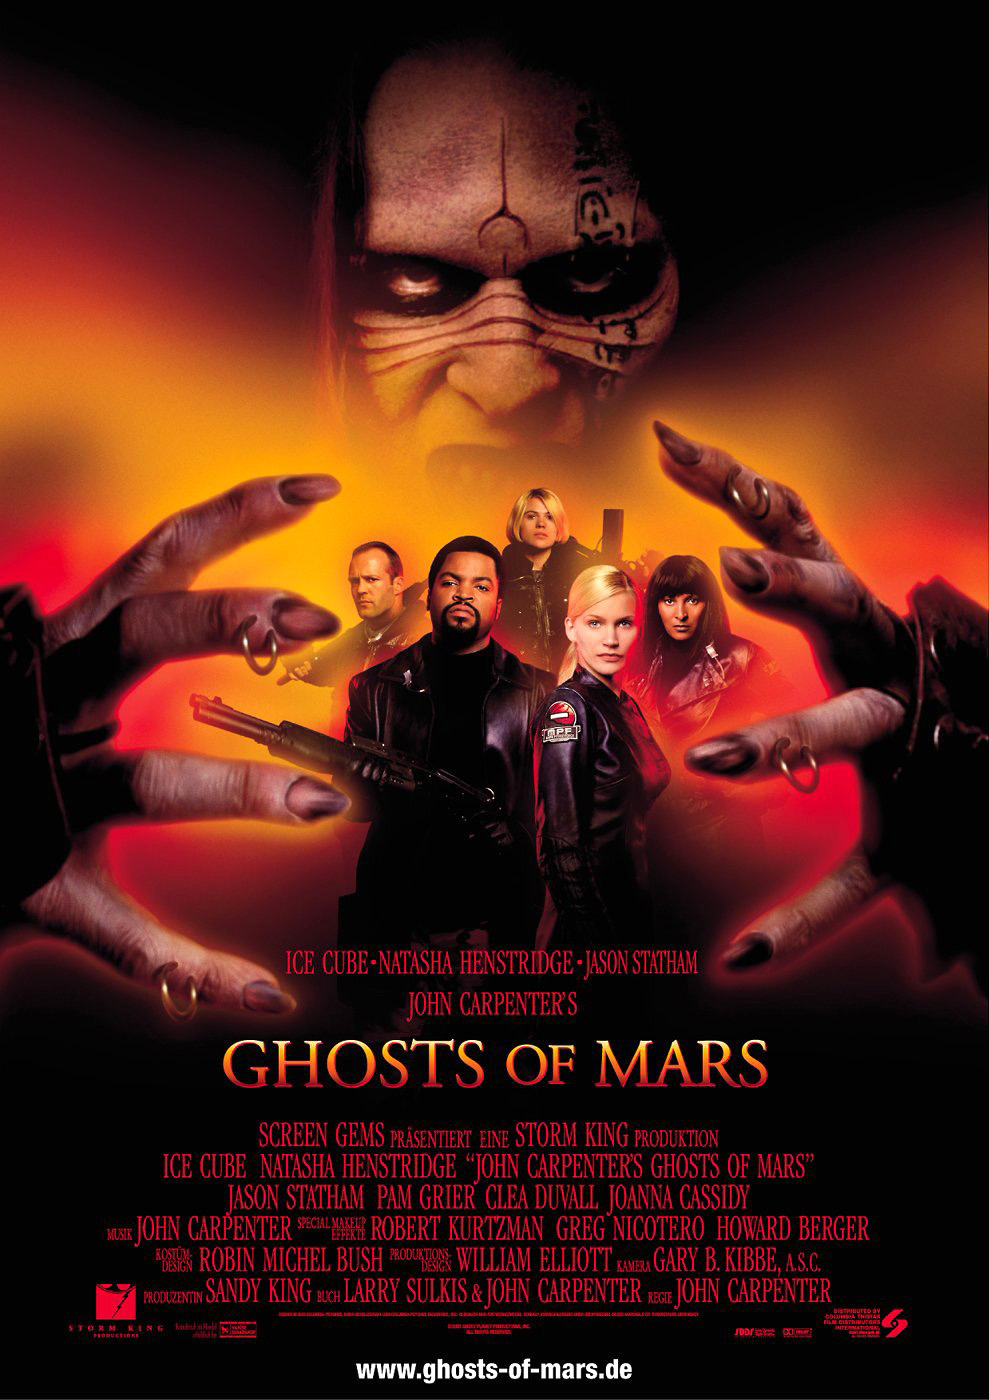 火星幽灵 Ghosts.of.Mars.2001.1080p.BluRay.REMUX.AVC.DTS-HD.MA.5.1-FGT 27.53GB